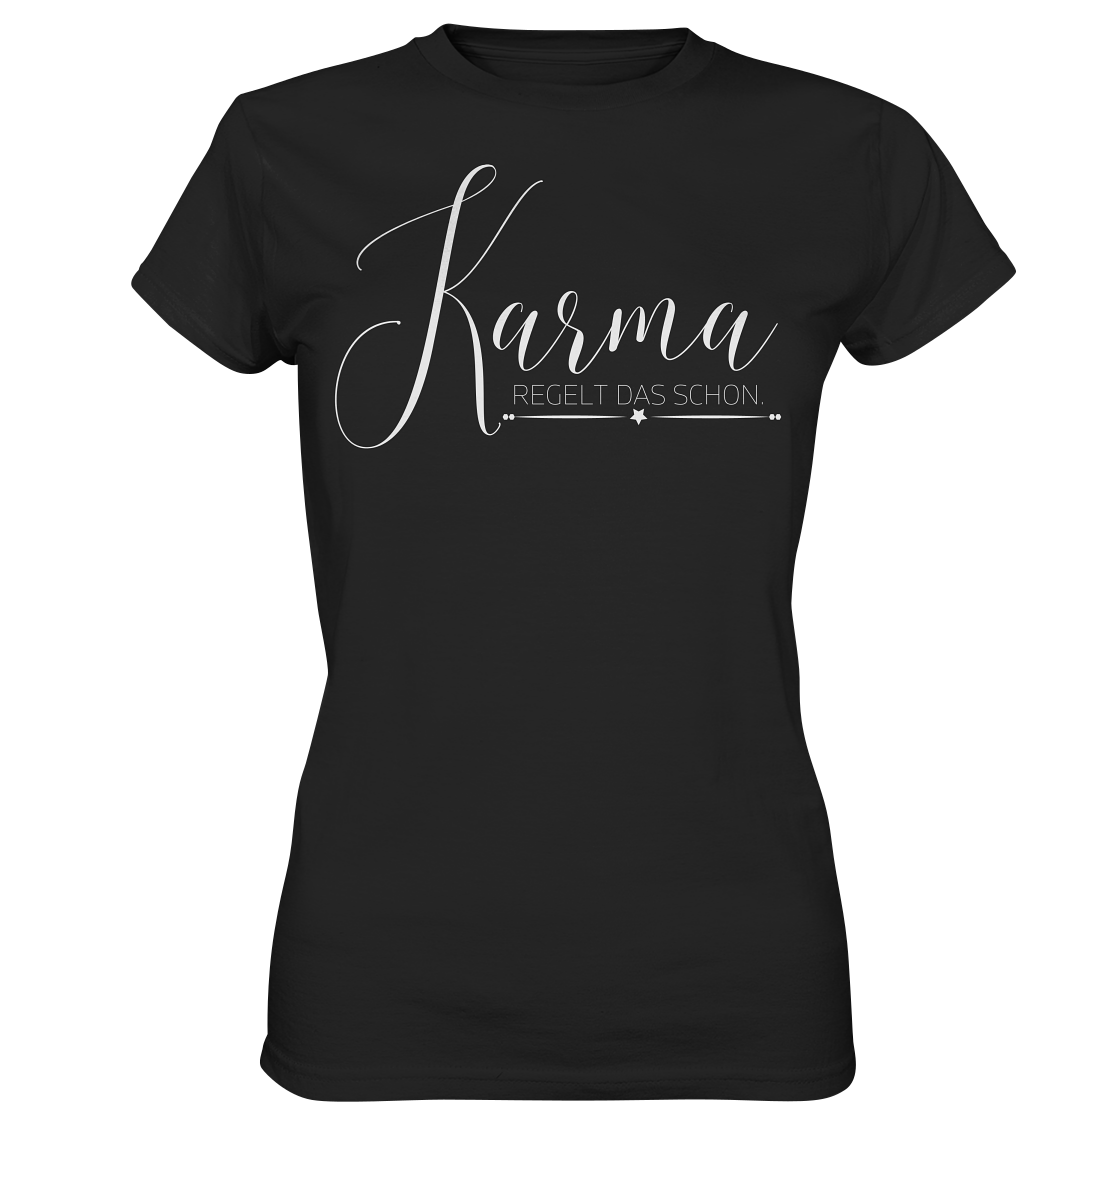 Karma regelt das schon - Ladies Premium Shirt